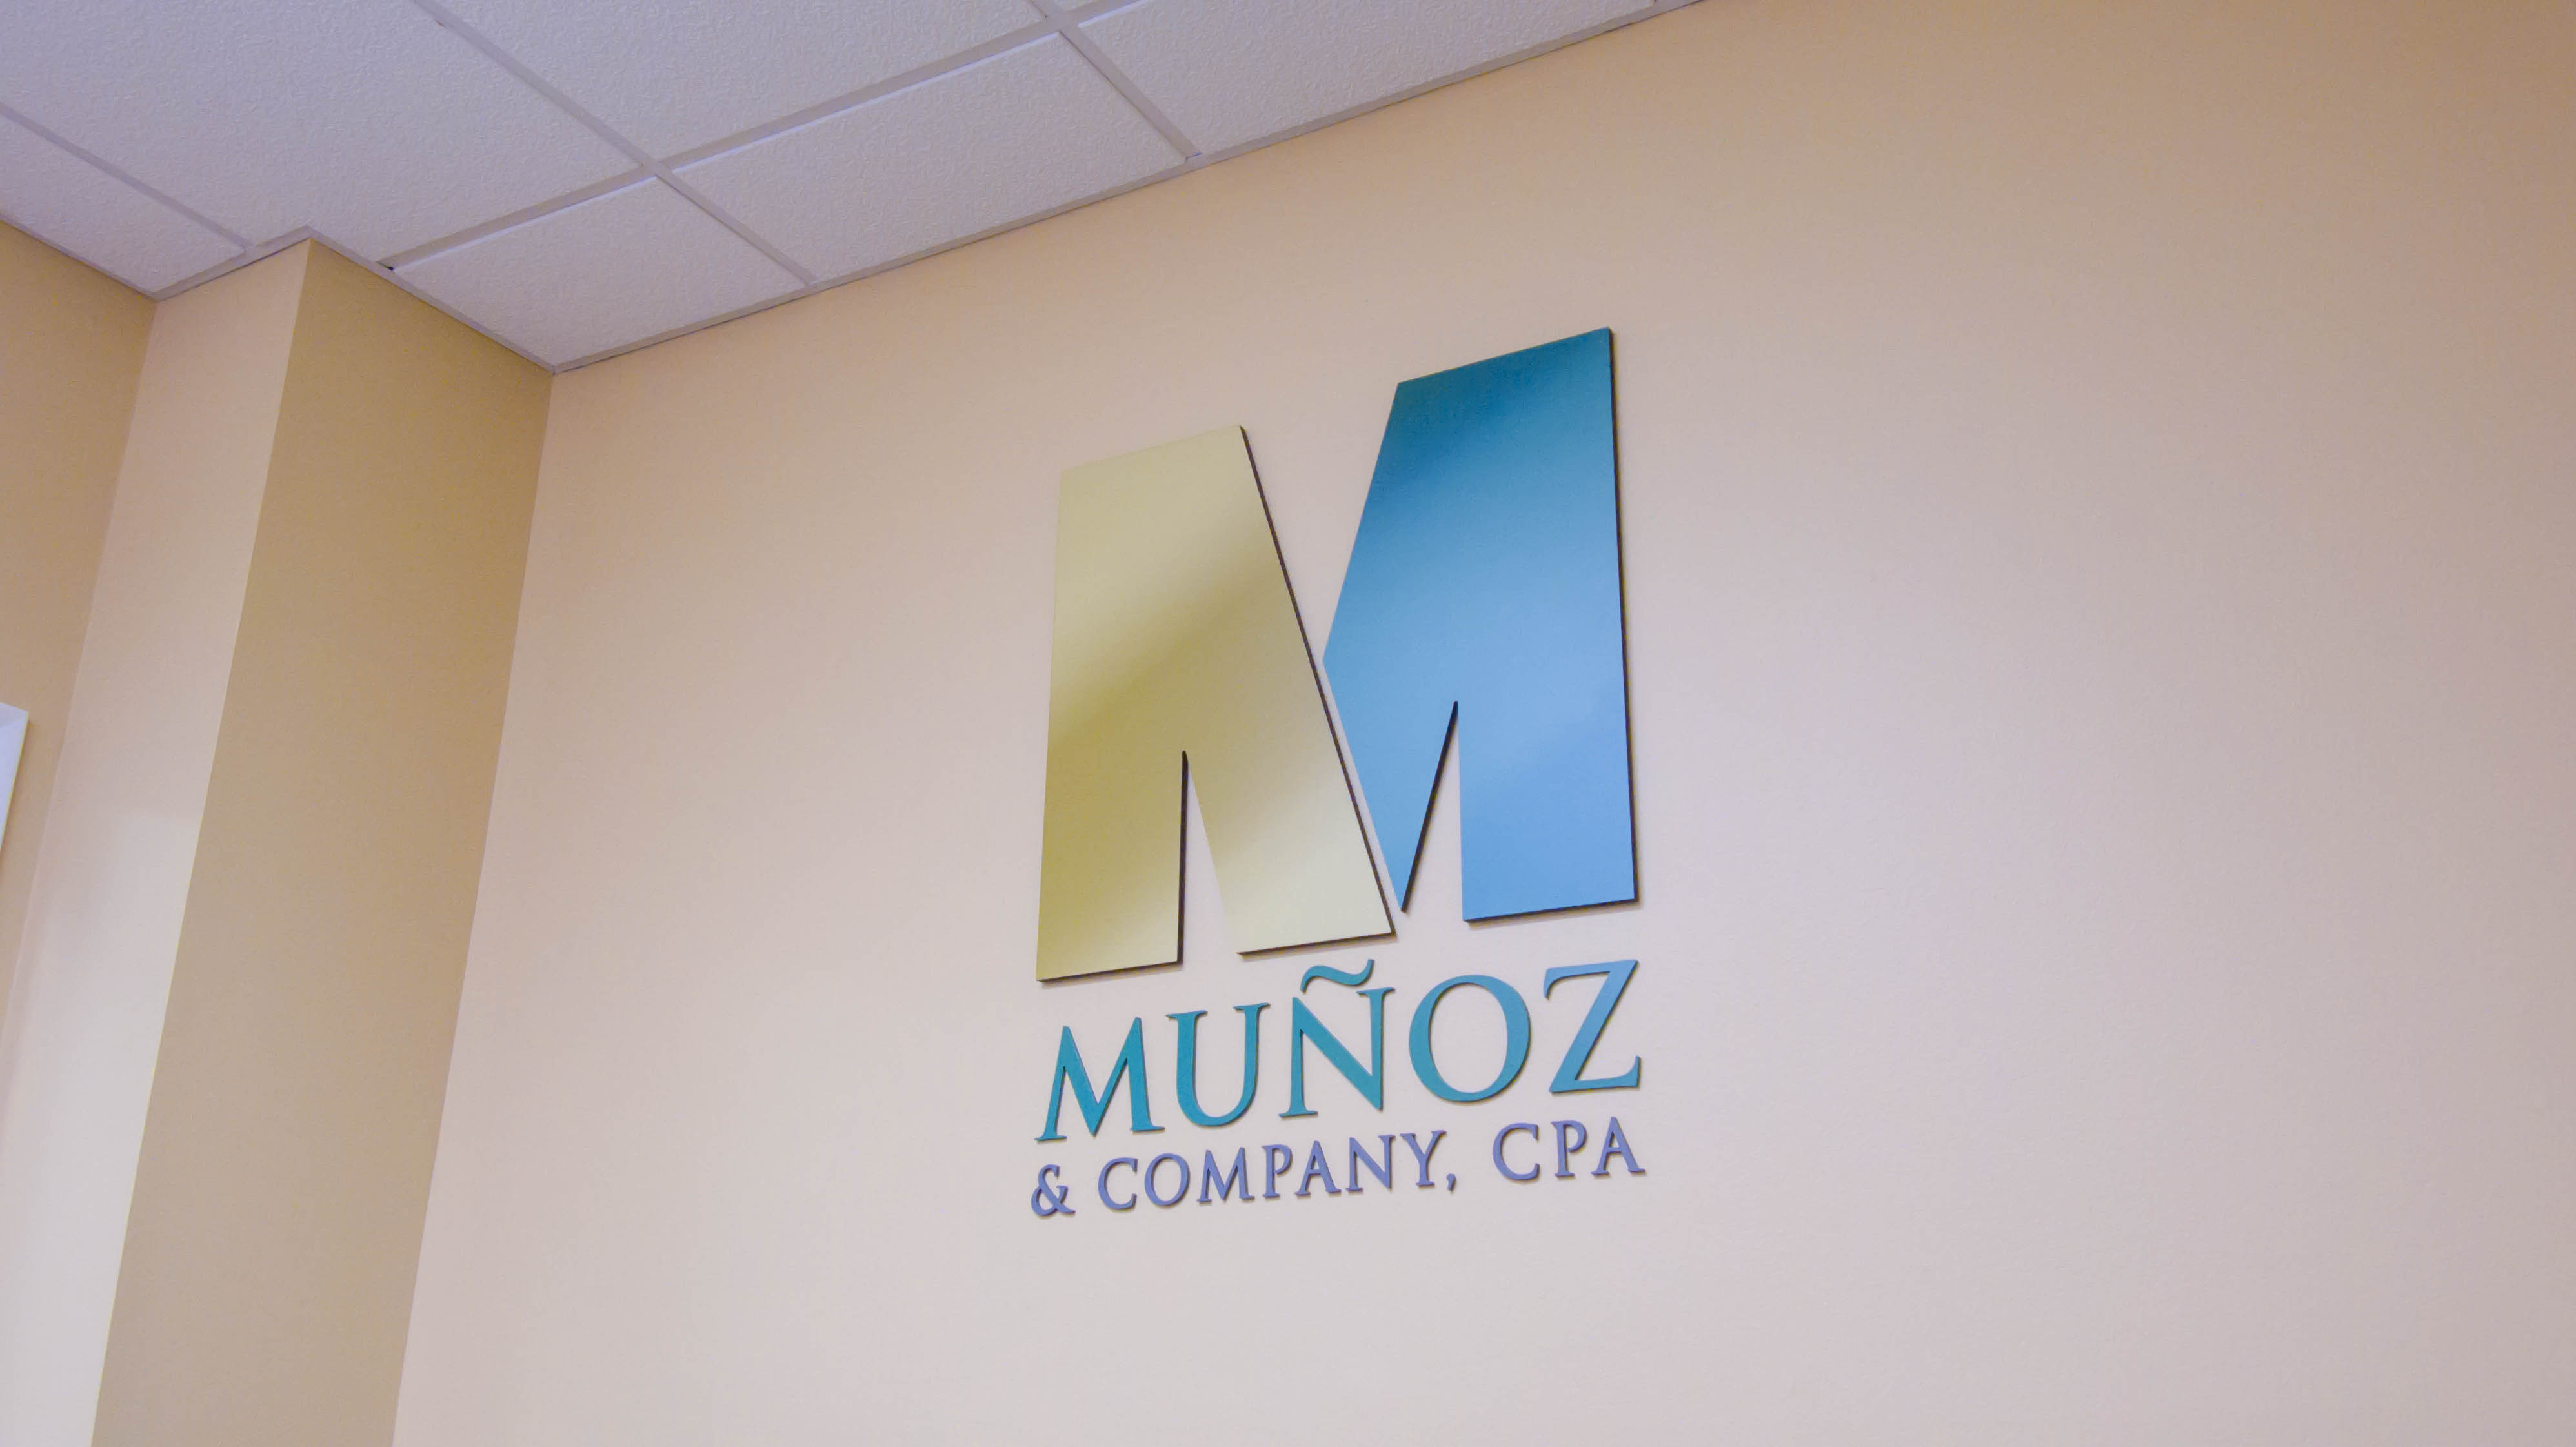 Munoz & Company, CPA - Gil Munoz 1